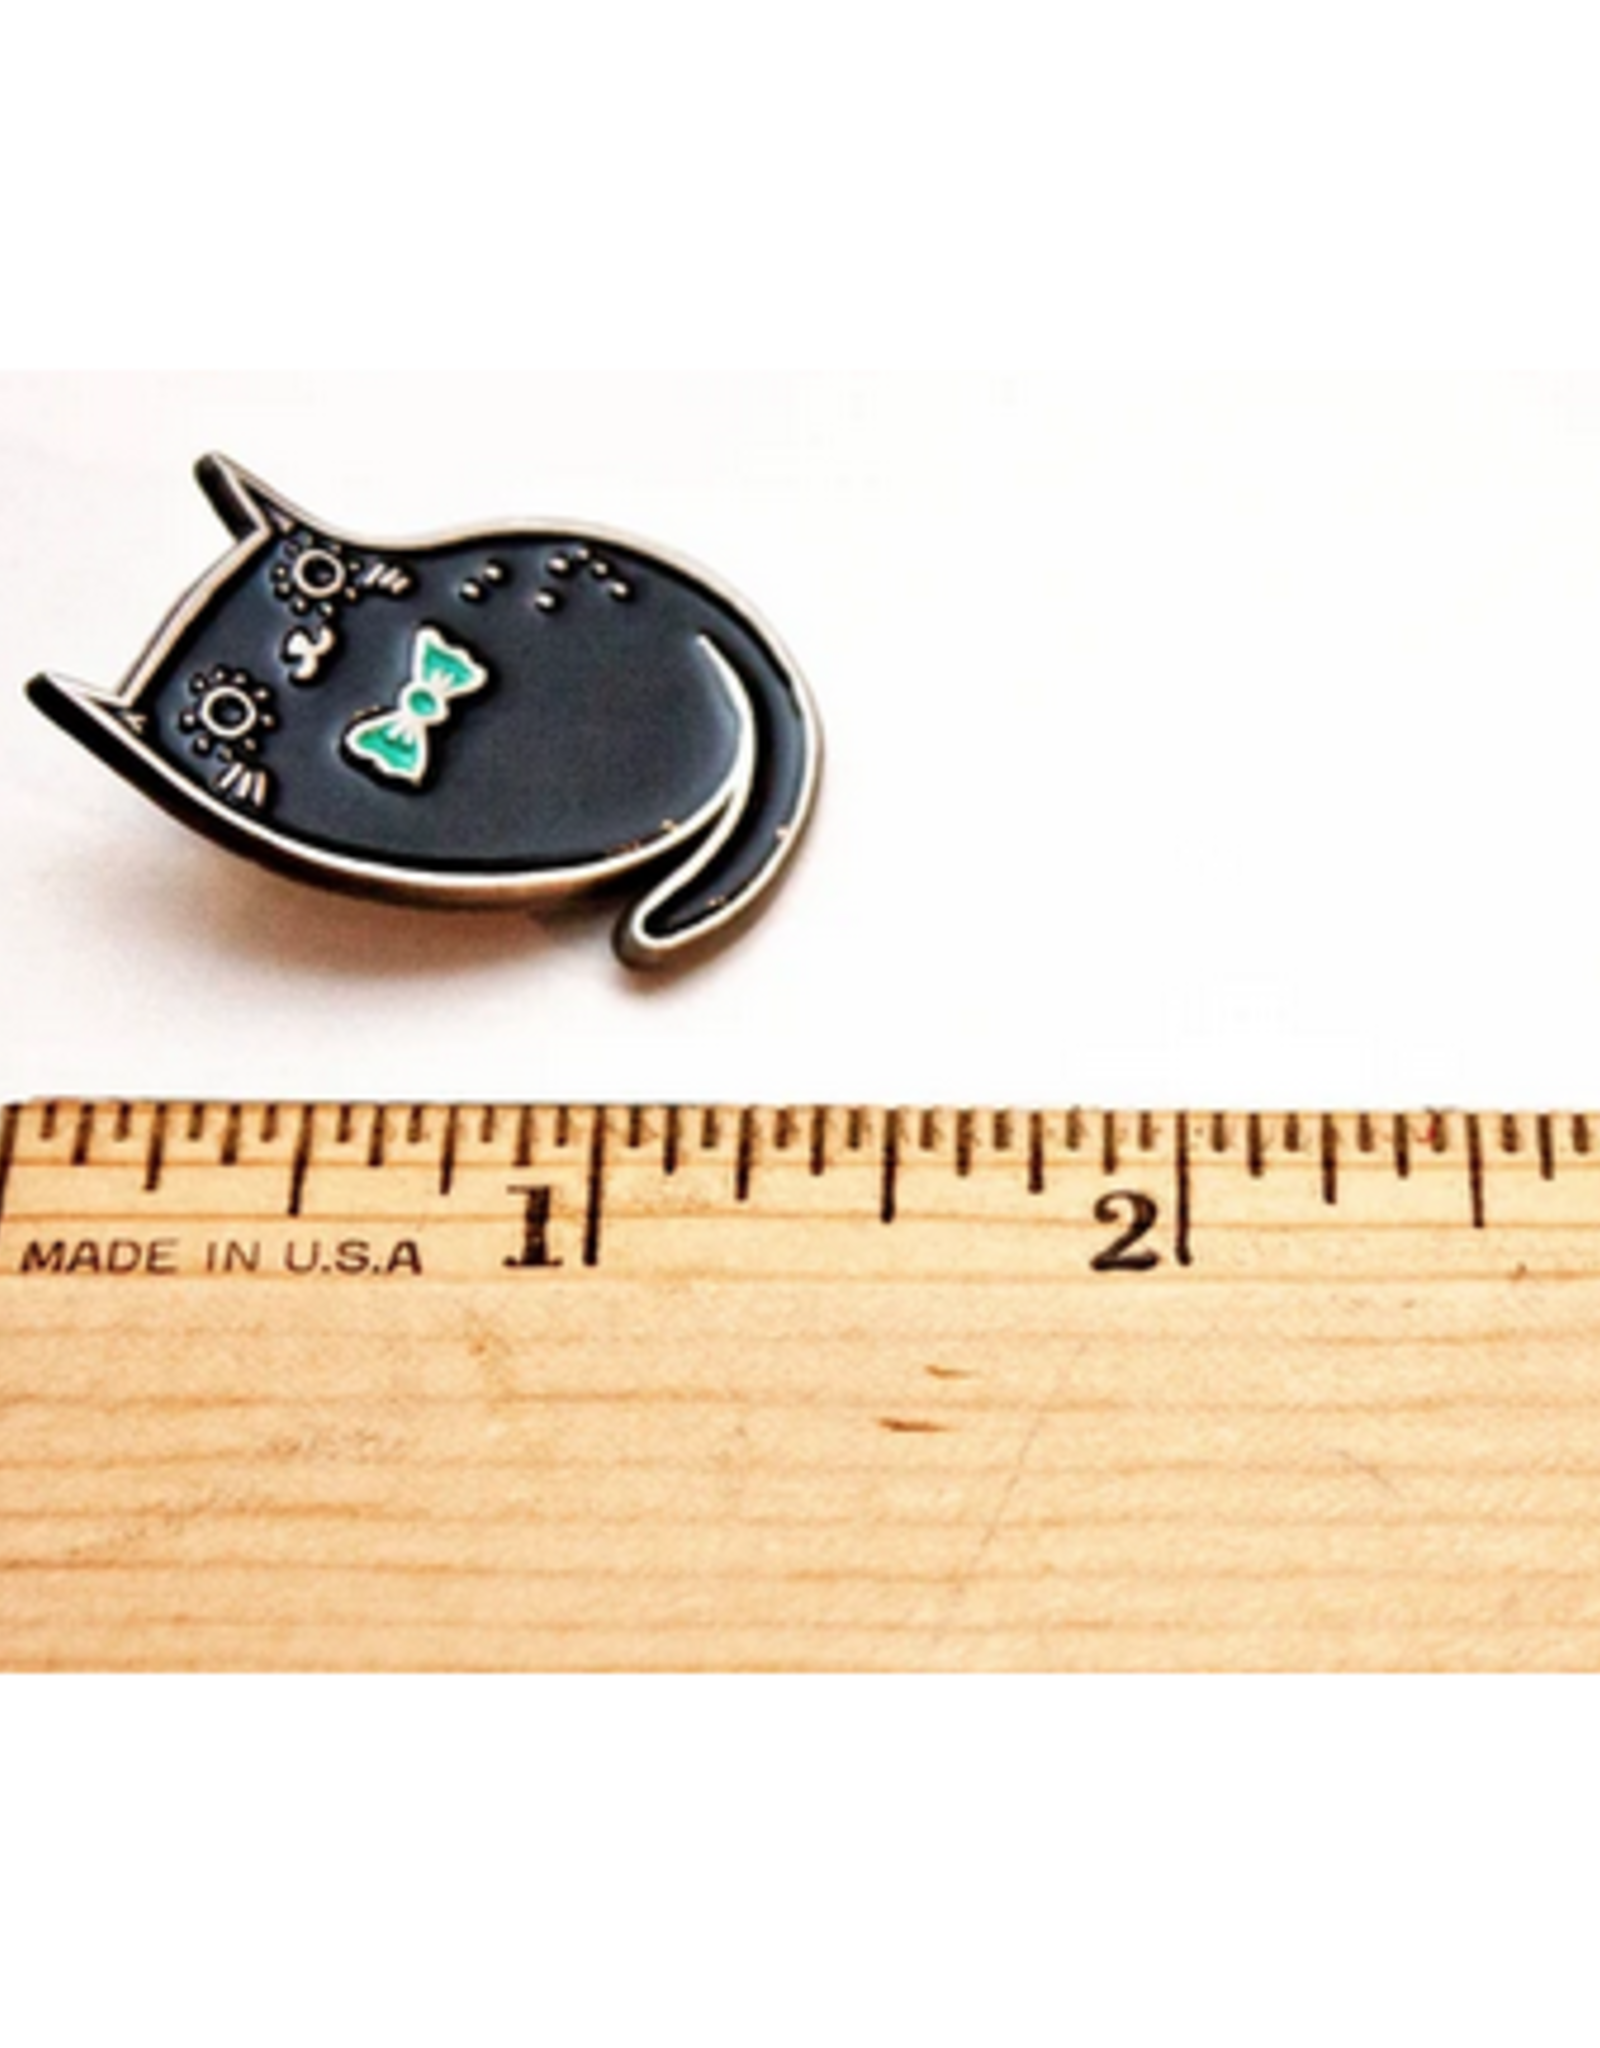 Black Cat Bowtie Enamel Pin